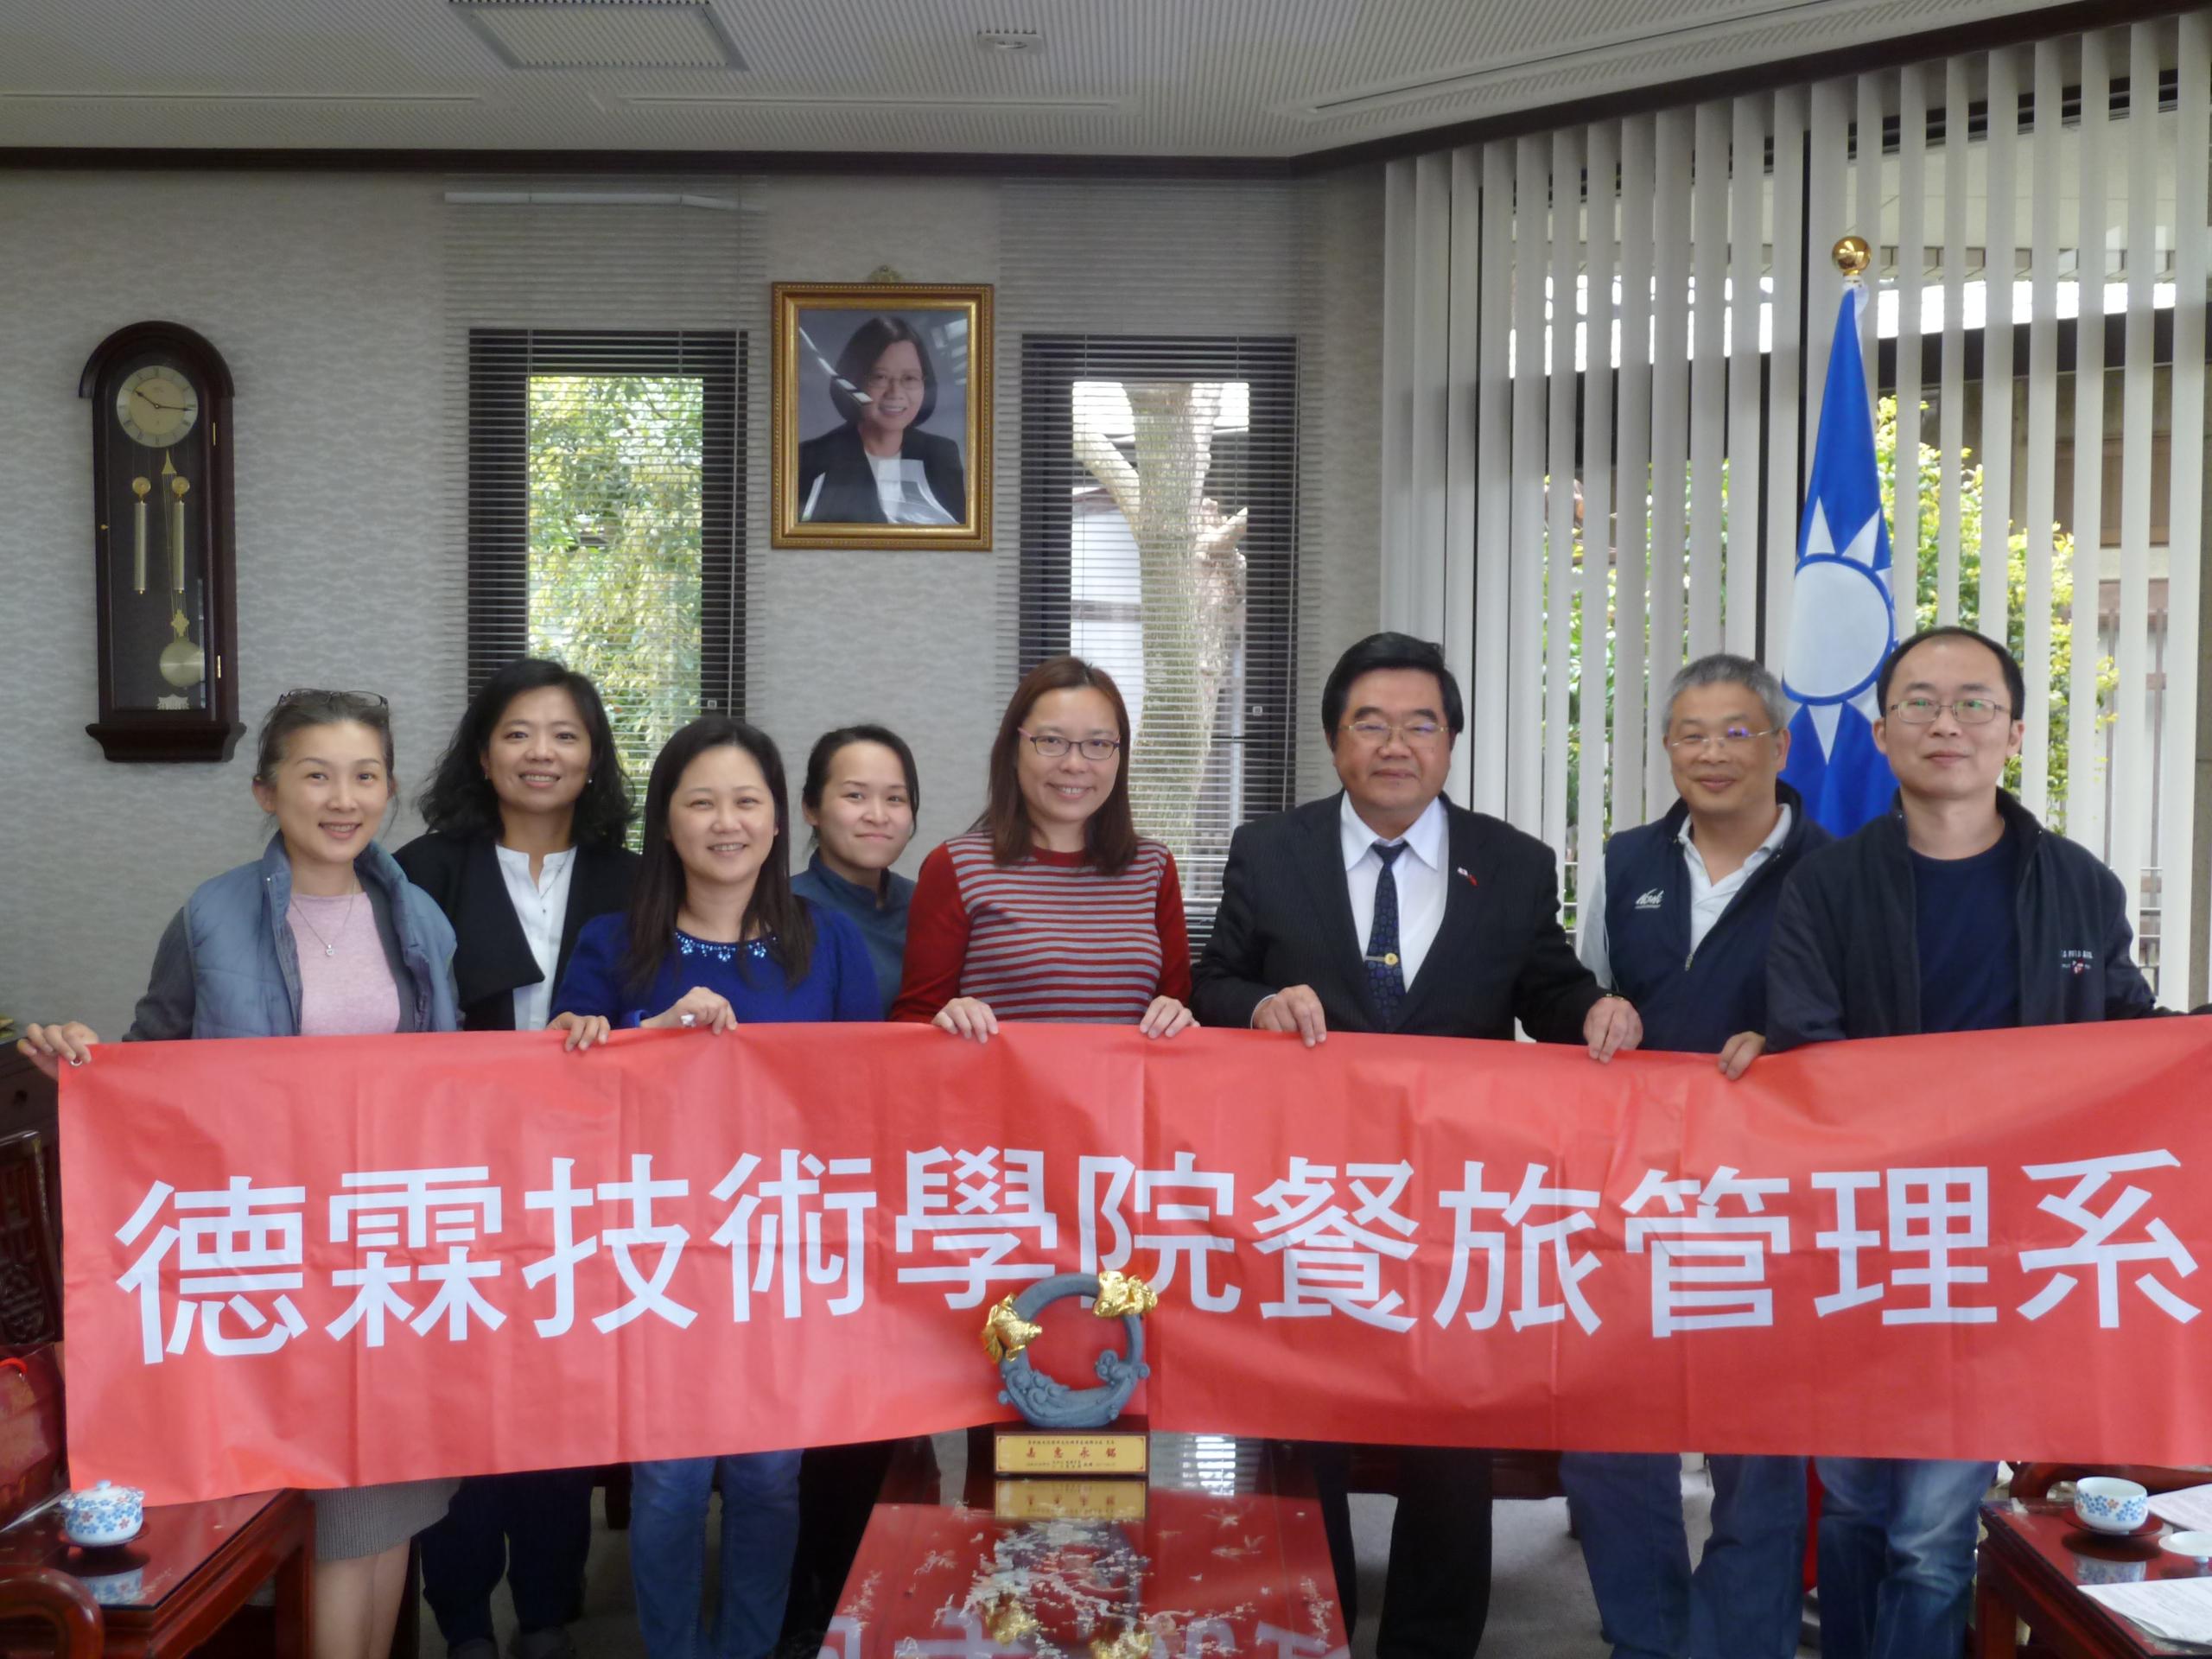 4月21日、德霖技術学院劉小瑋先生等一行計7名が戎総領事を表敬訪問、昨年熊本大地震時救助への感謝。